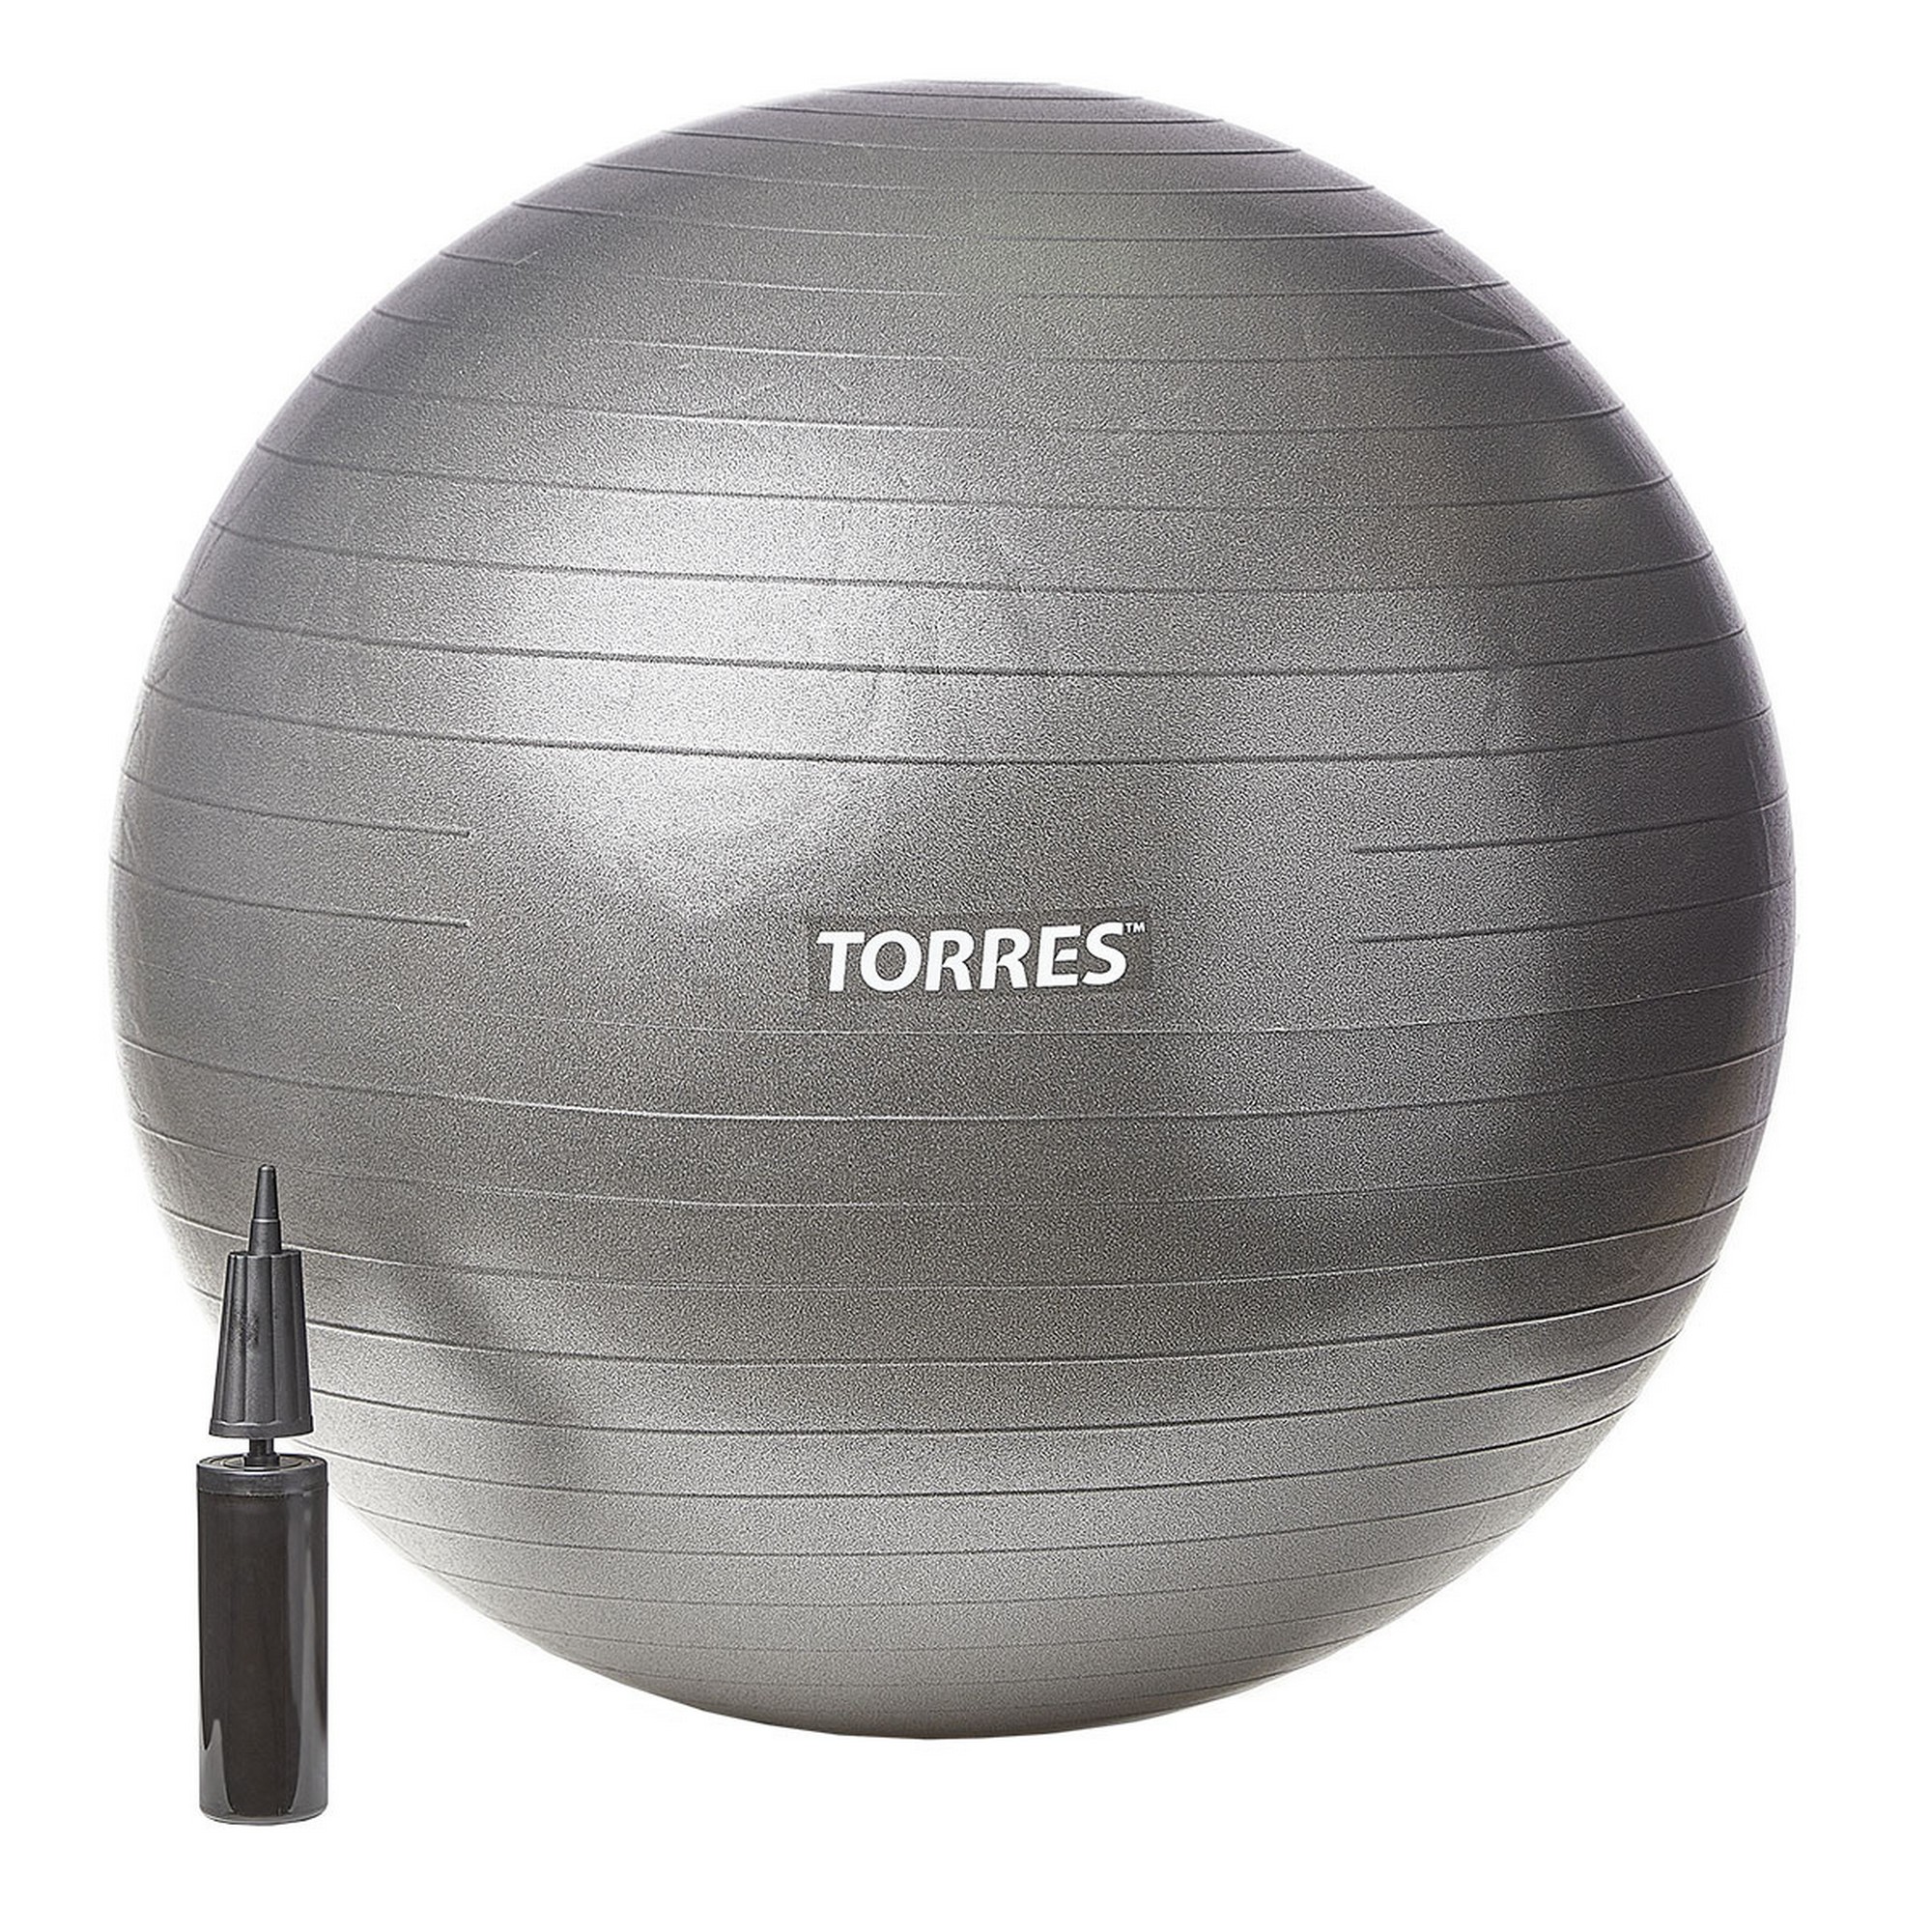 Мяч гимнастический d85 см Torres с насосом AL121185BK темно-серый 2000_2000